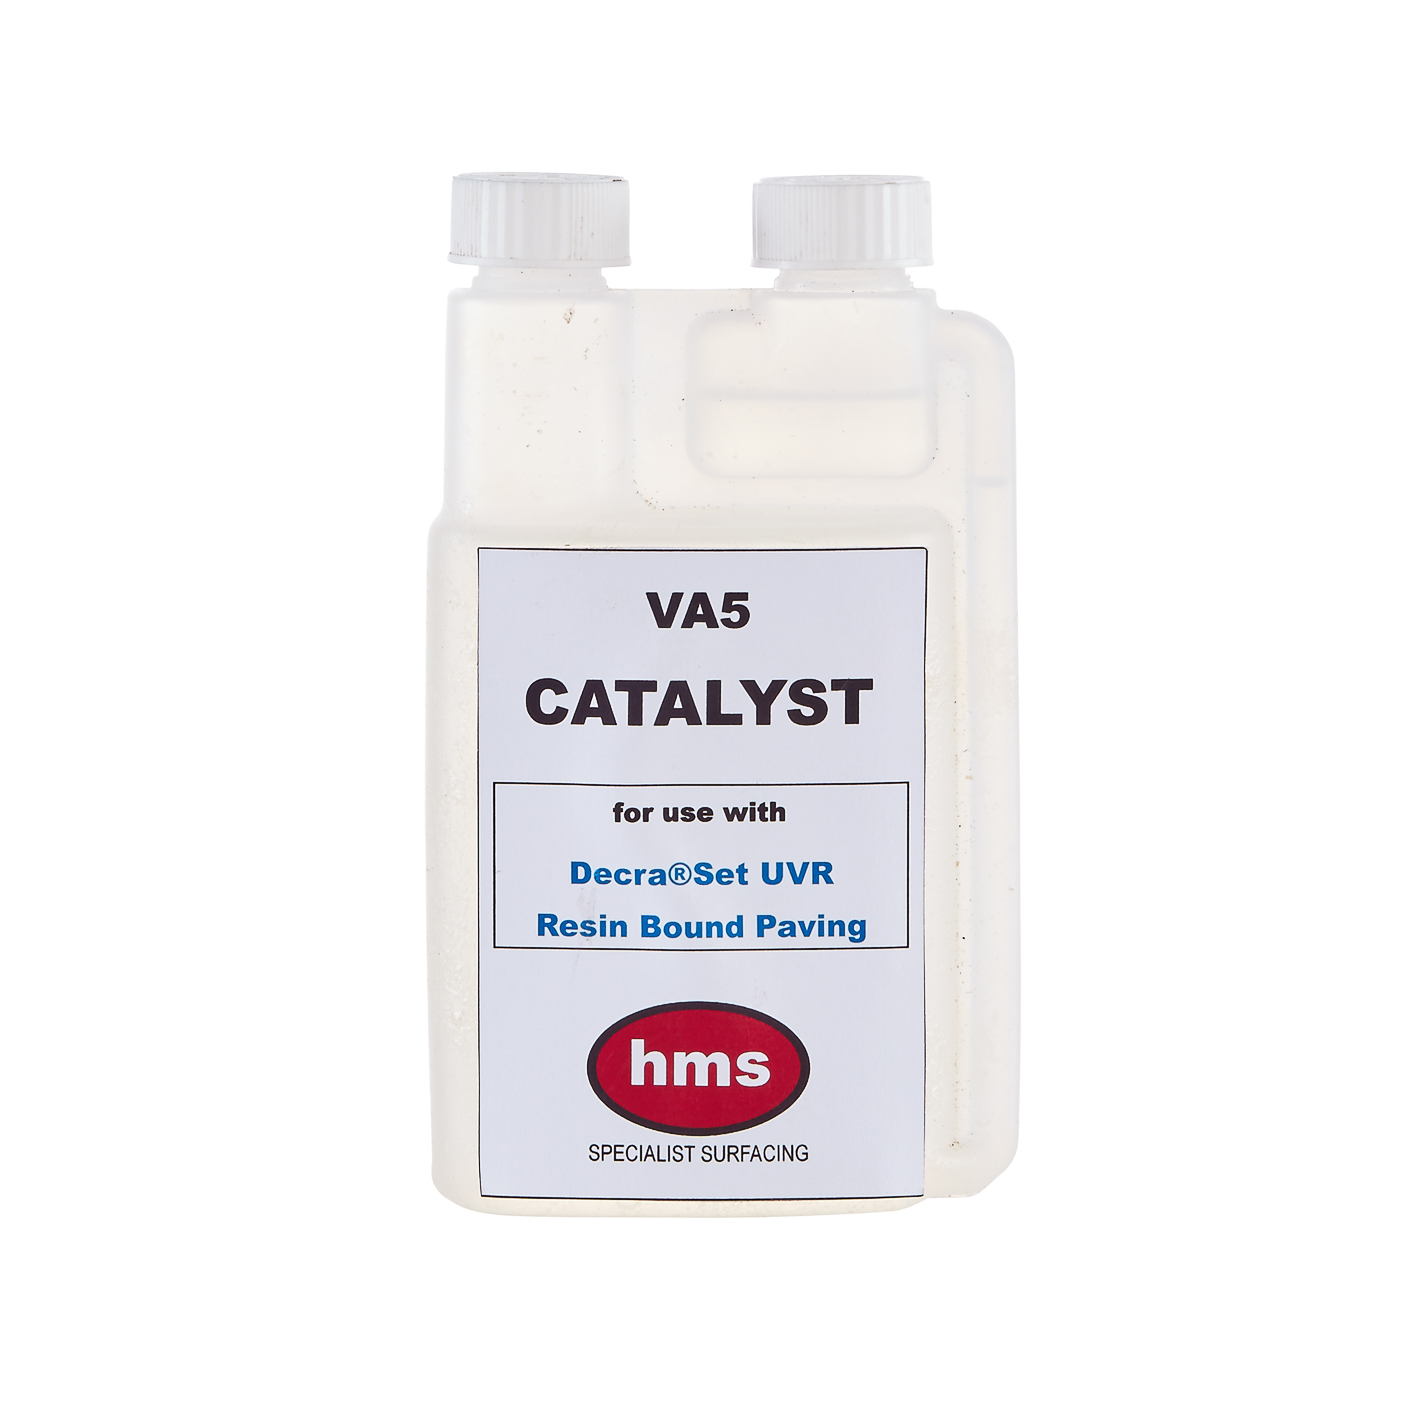 VA5 Catalyst